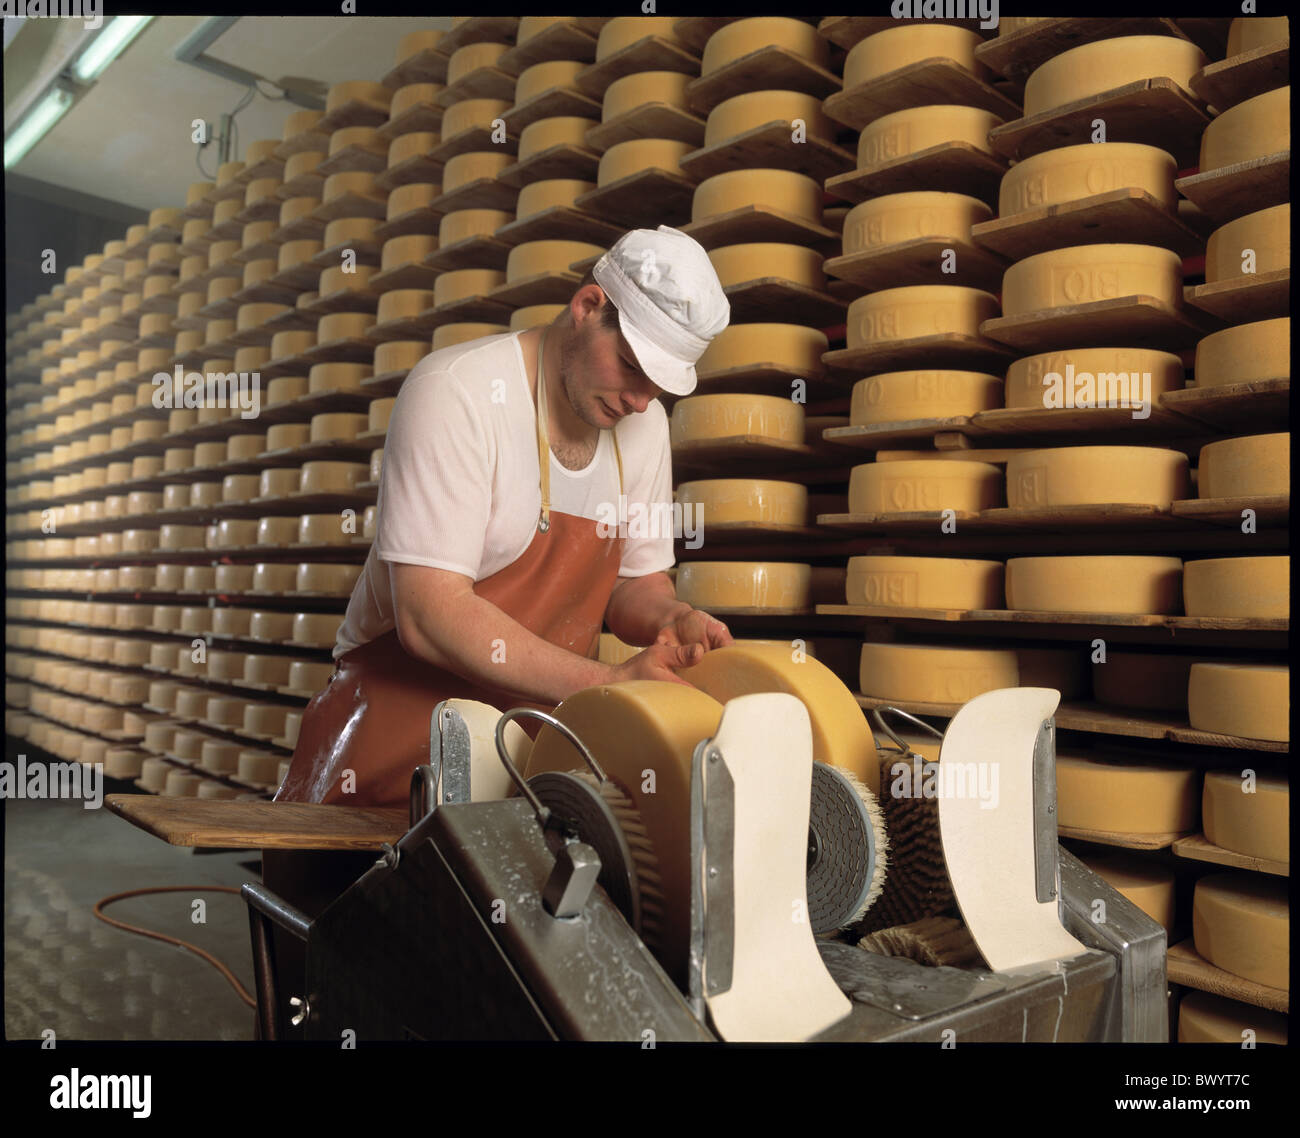 Kaserei Schaukaserei traitement du lait Suisse Europe Appenzell fromage pierre trader action aucun modèle libération Banque D'Images